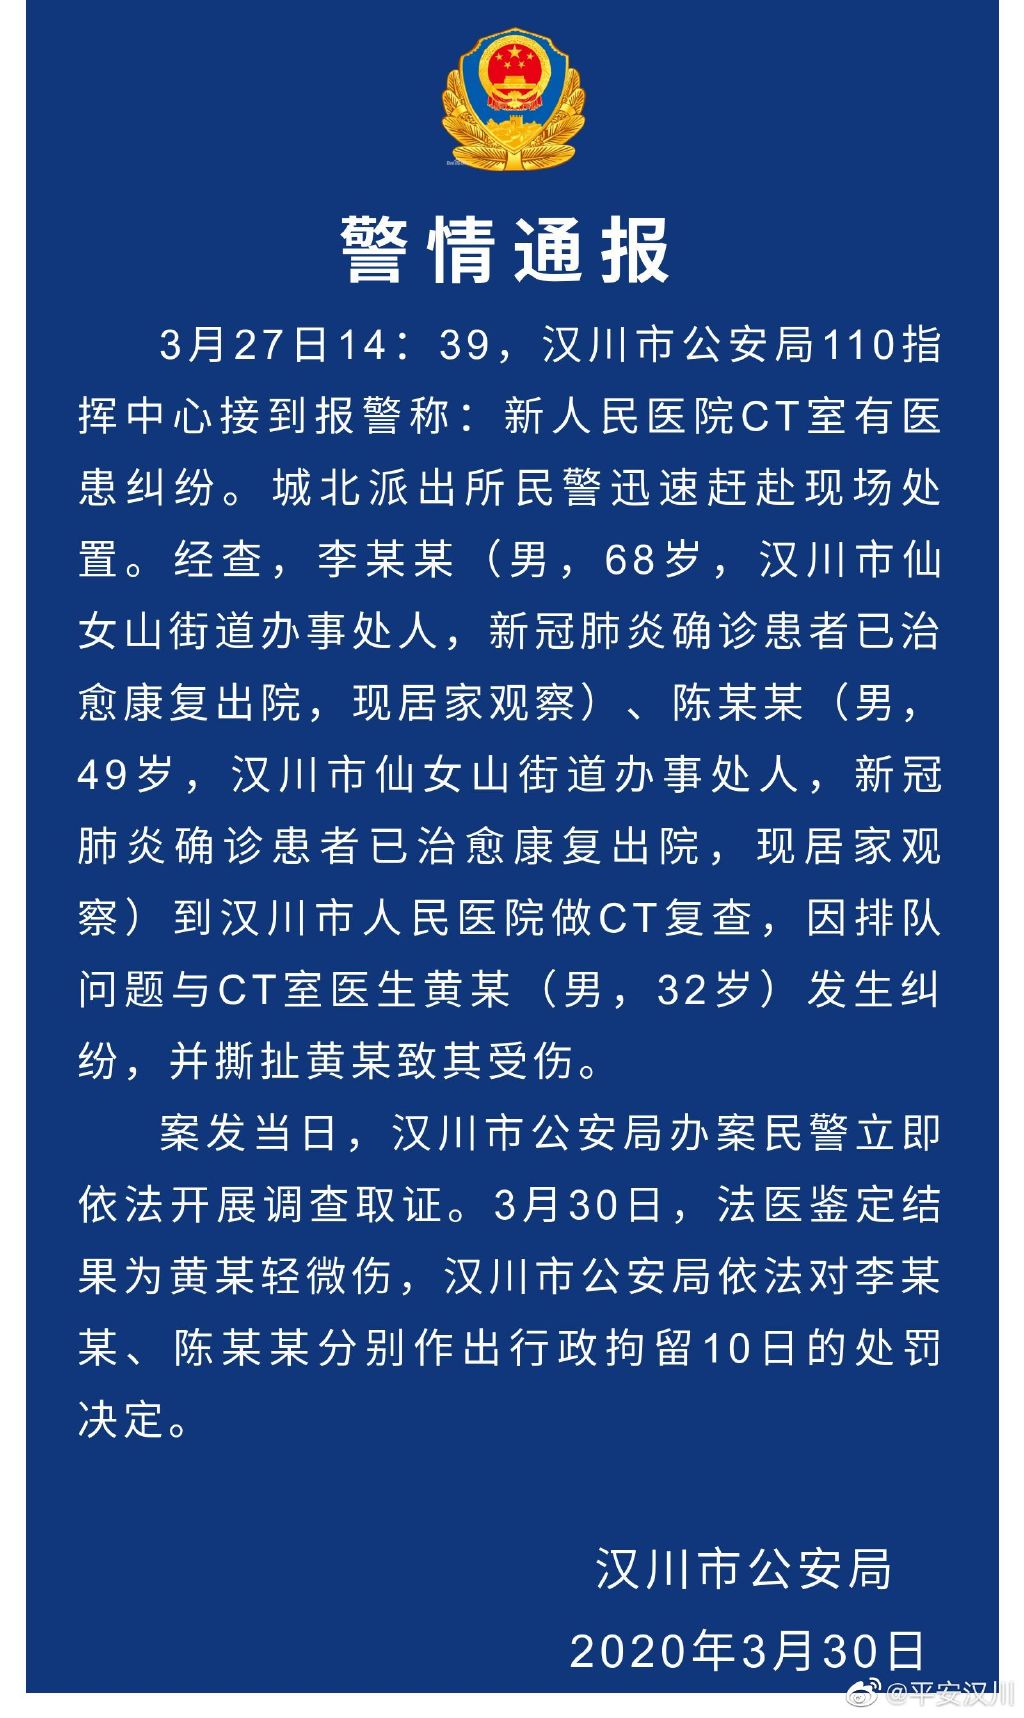 湖北省漢川市公安局官方微博圖